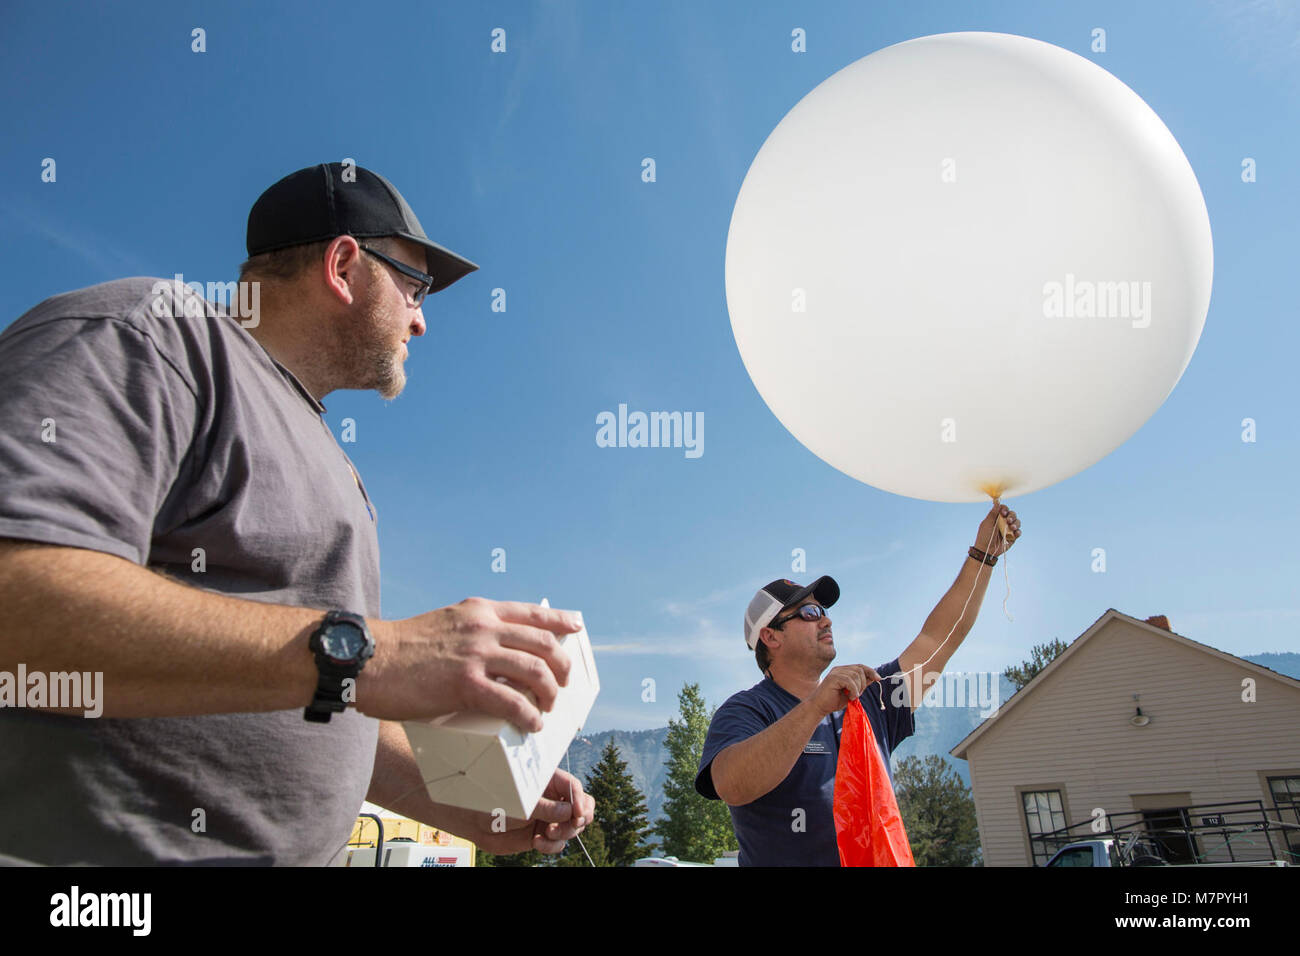 Einleitung Ein Wetterballon in Mammoth Hot Springs Brand Behavior Analyst trainee Phil Knard und Incident Meteorologe Dan Borsum bereiten ein wetterballon zu starten. Daten aus dieser Ballon unterstützt lokale Wetter und Feuer Verhalten für den Tag vorhersagen. Stockfoto